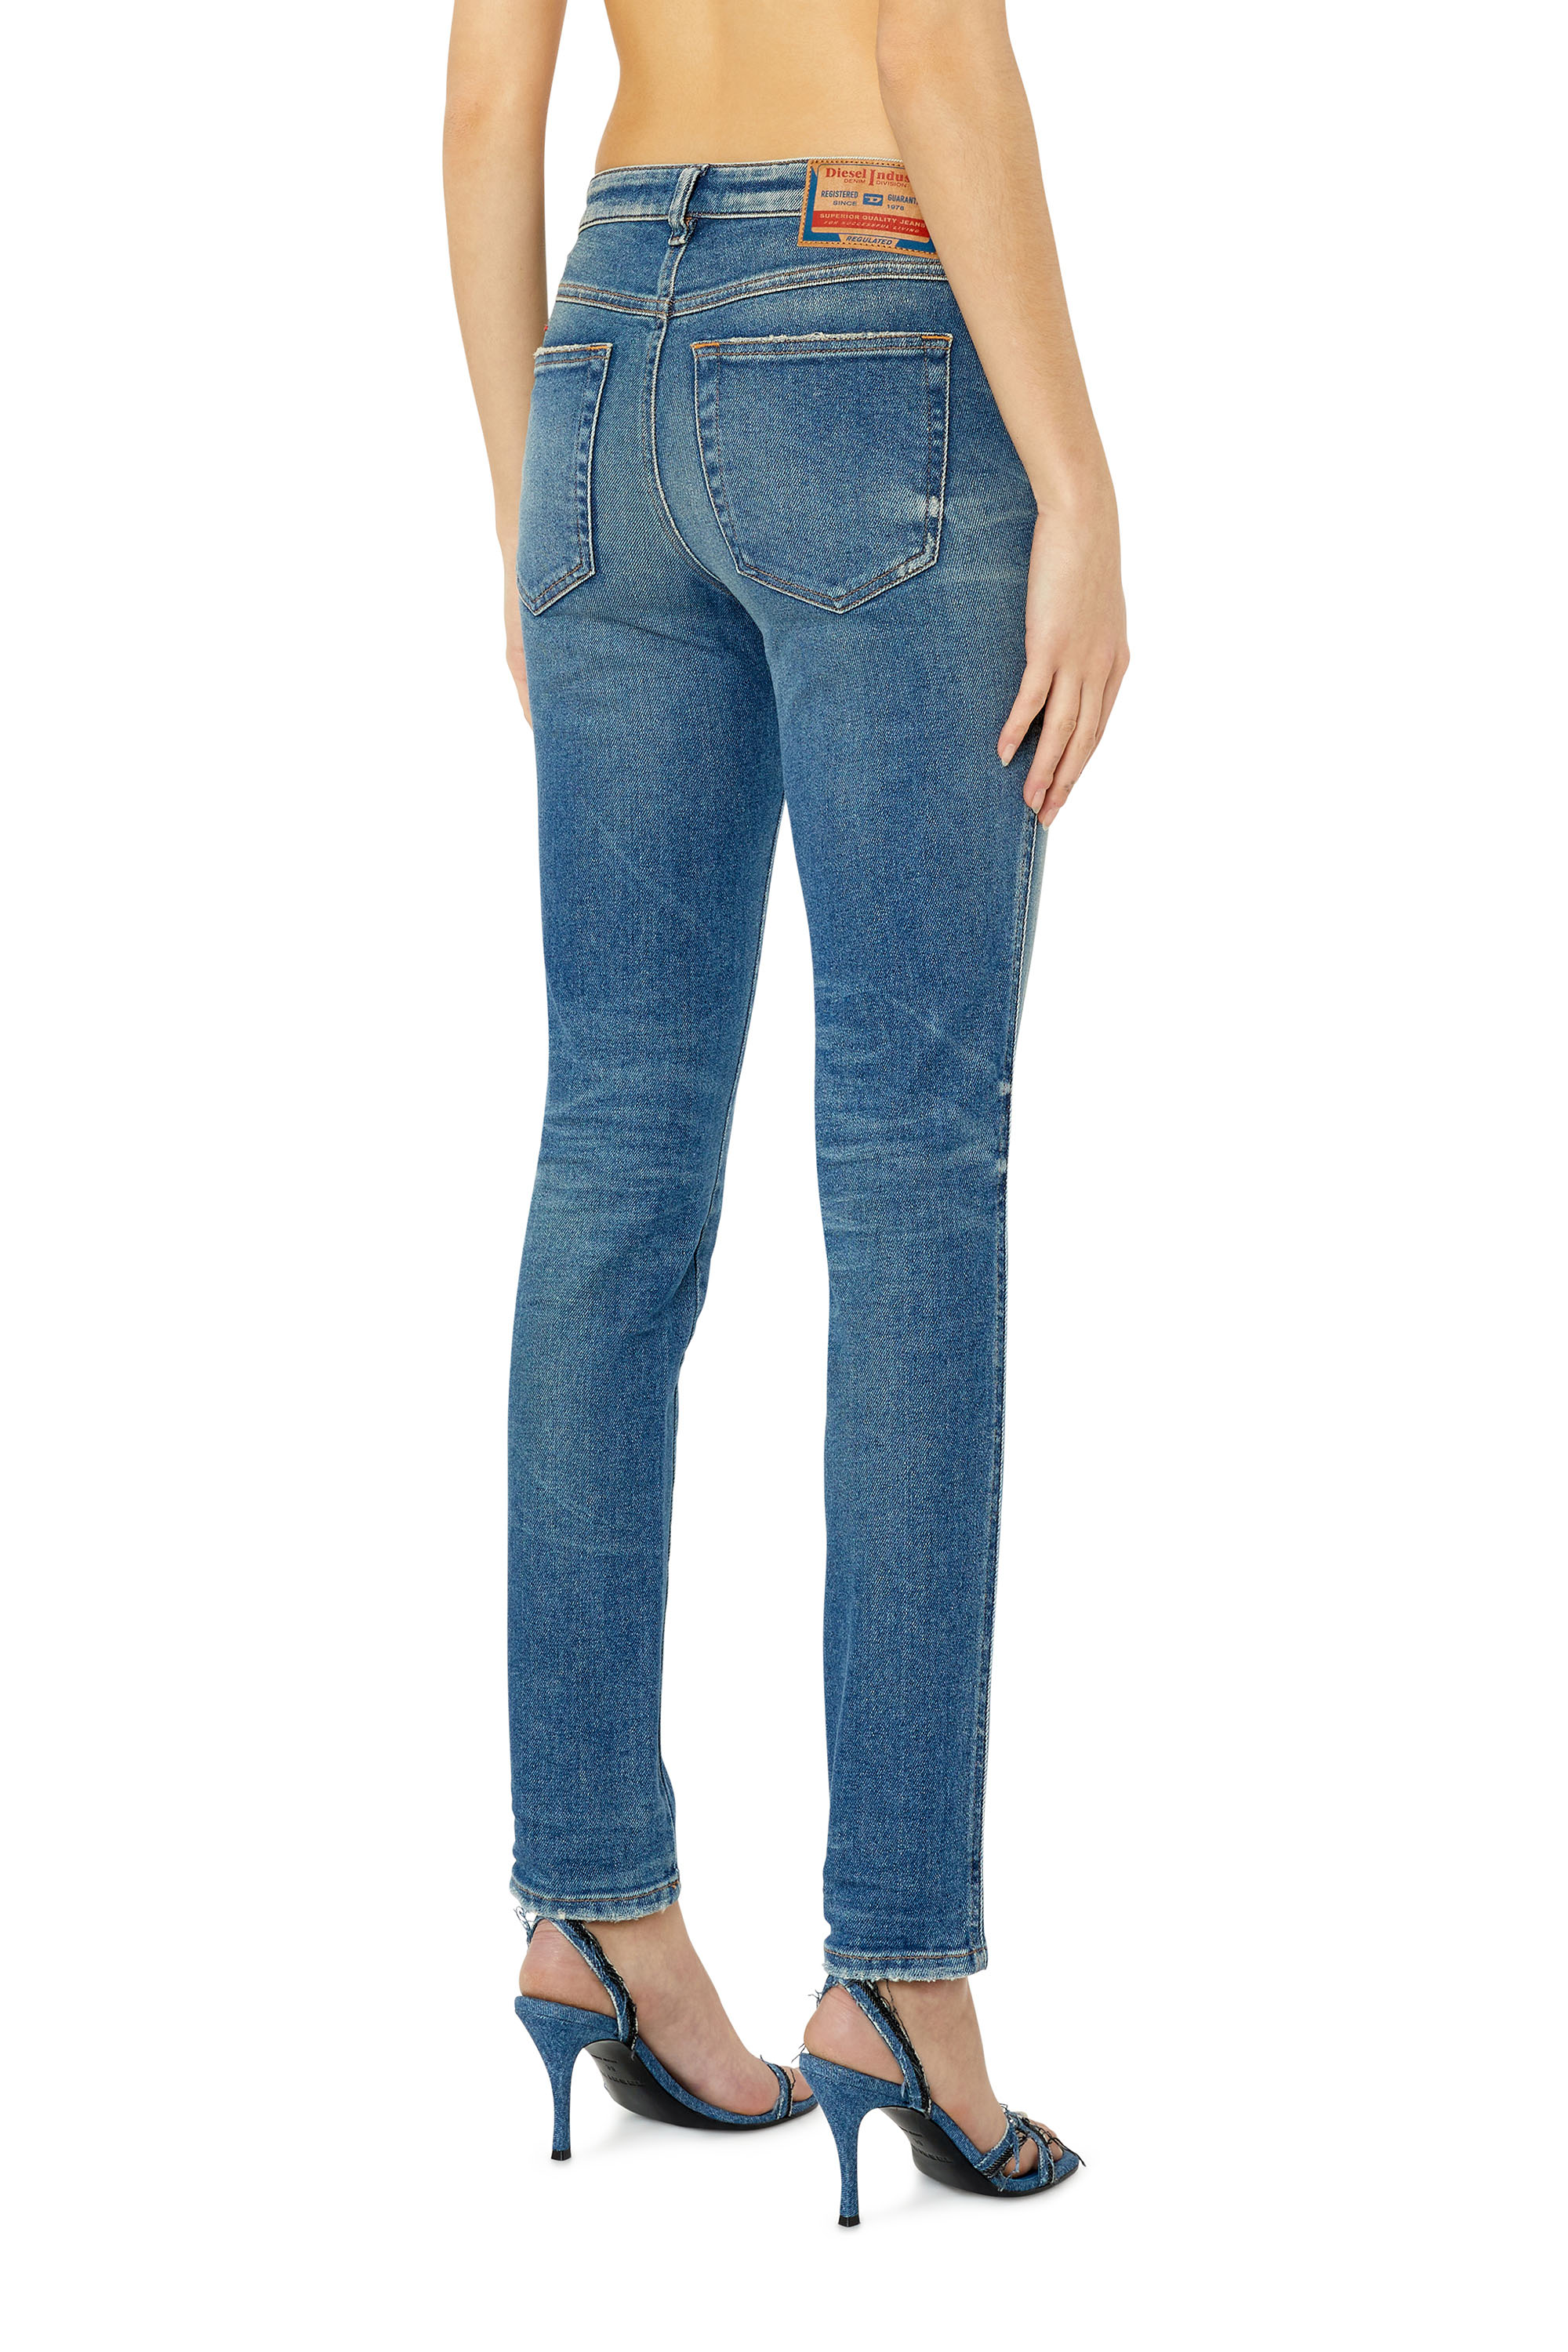 Diesel - Skinny Jeans 2015 Babhila 09E88, Medium blue - Image 2